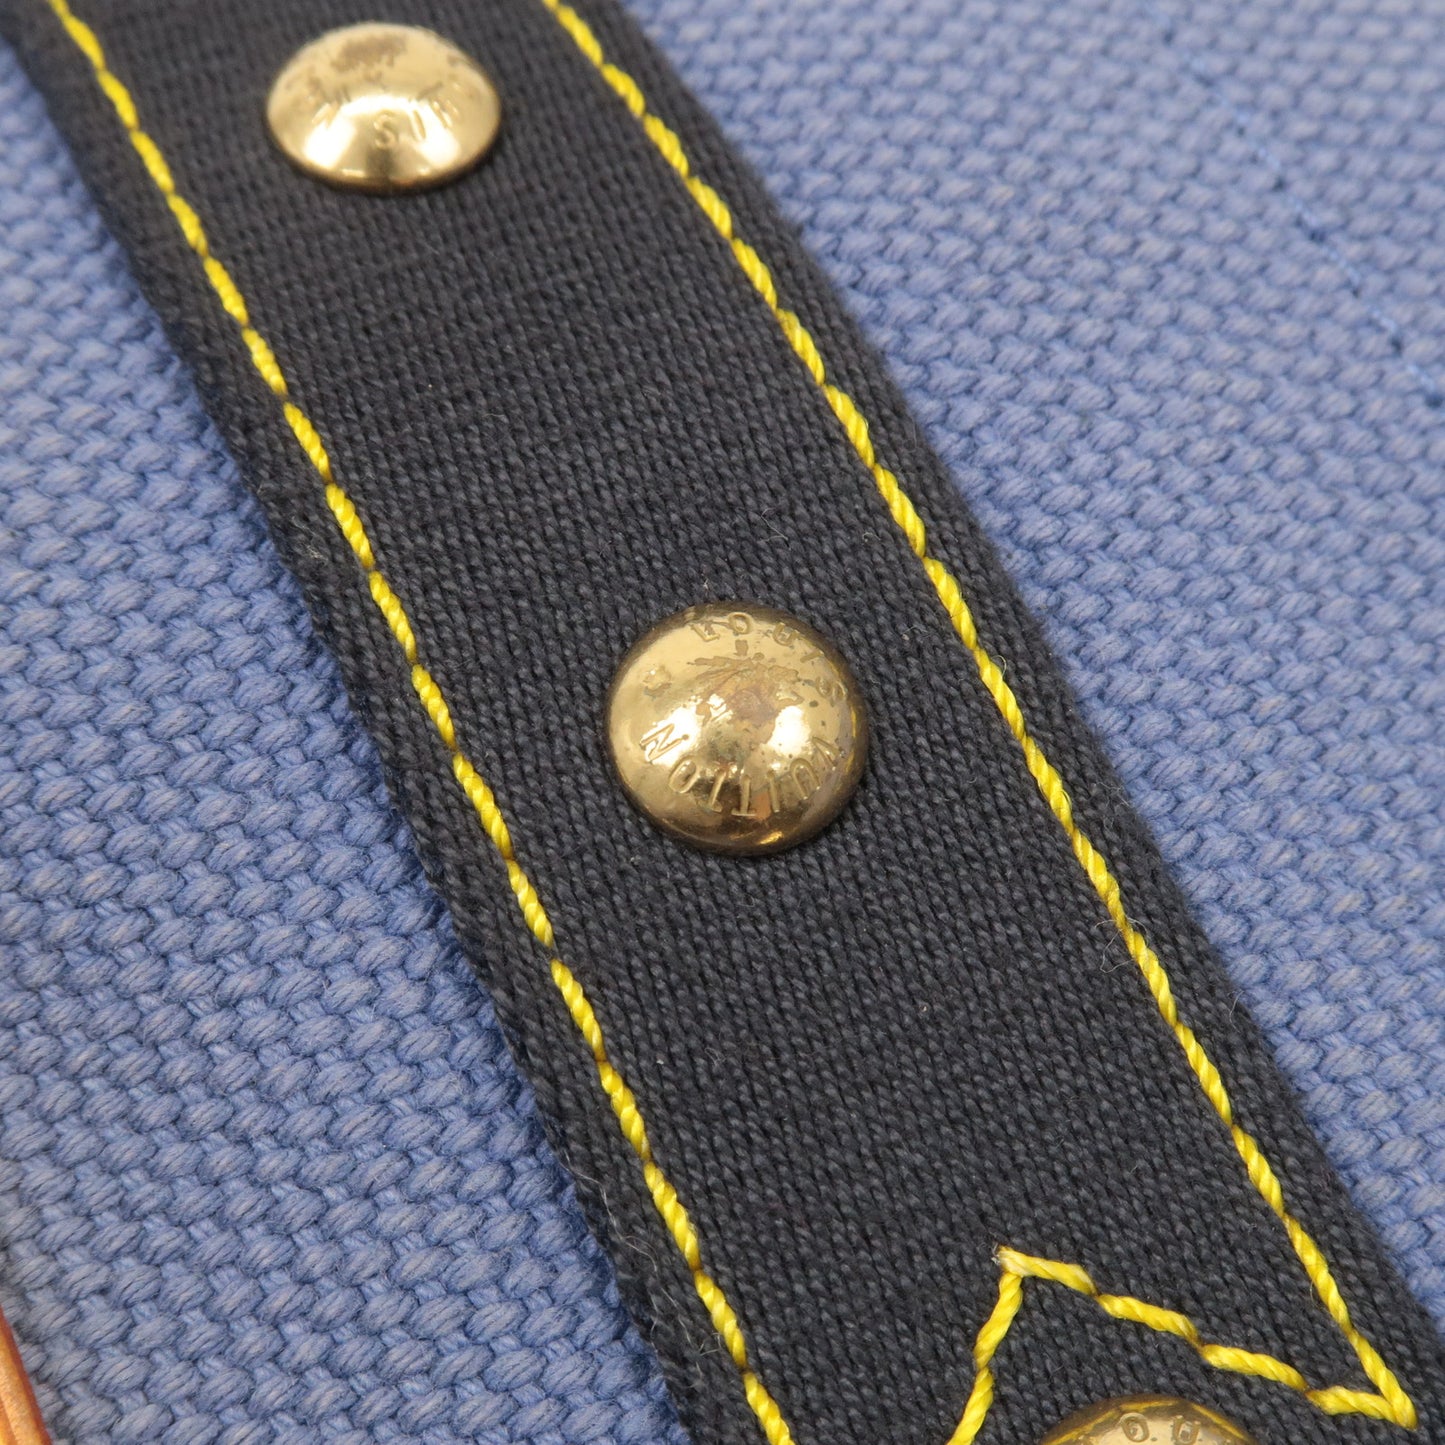 Louis Vuitton Antigua Besace PM Shoulder Bag Blue M40081